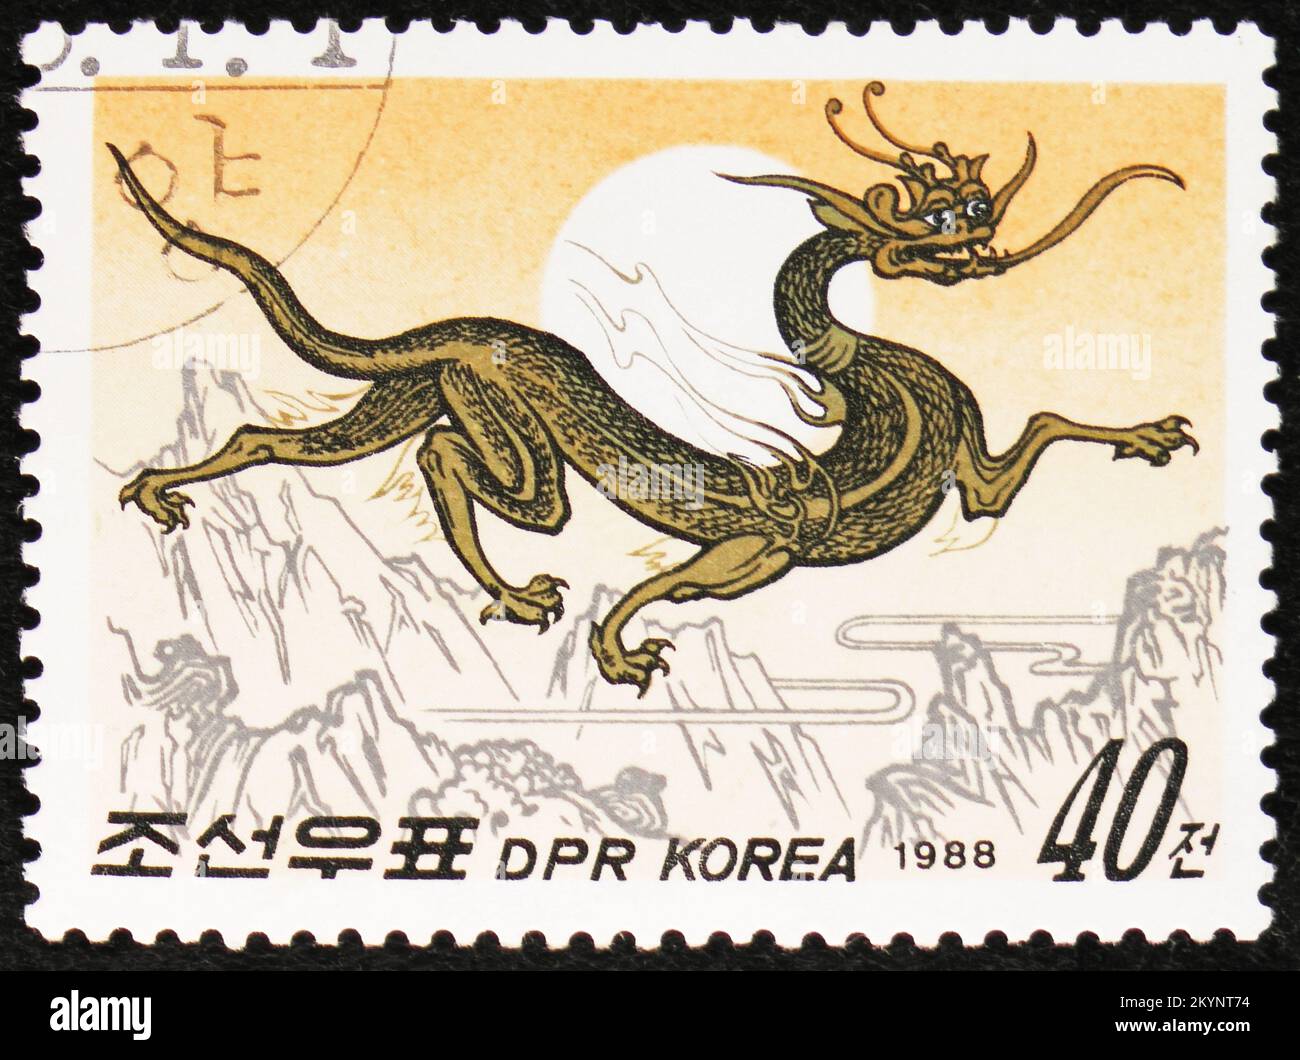 MOSCOU, RUSSIE - 29 OCTOBRE 2022: Timbre-poste imprimé en Corée montre Dragon, nouvel an chinois 1988 - année de la série Dragon, vers 1988 Banque D'Images